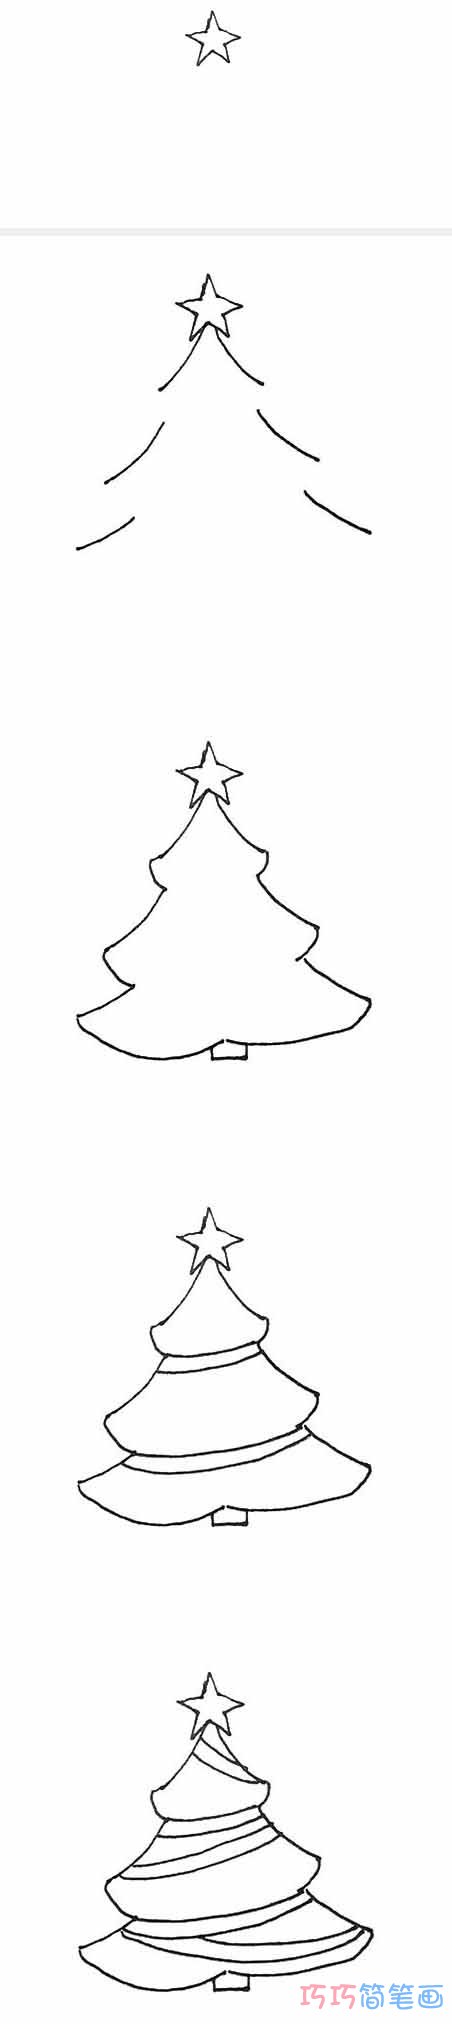 漂亮圣诞树怎么画好看 带步骤图圣诞树简笔画图片